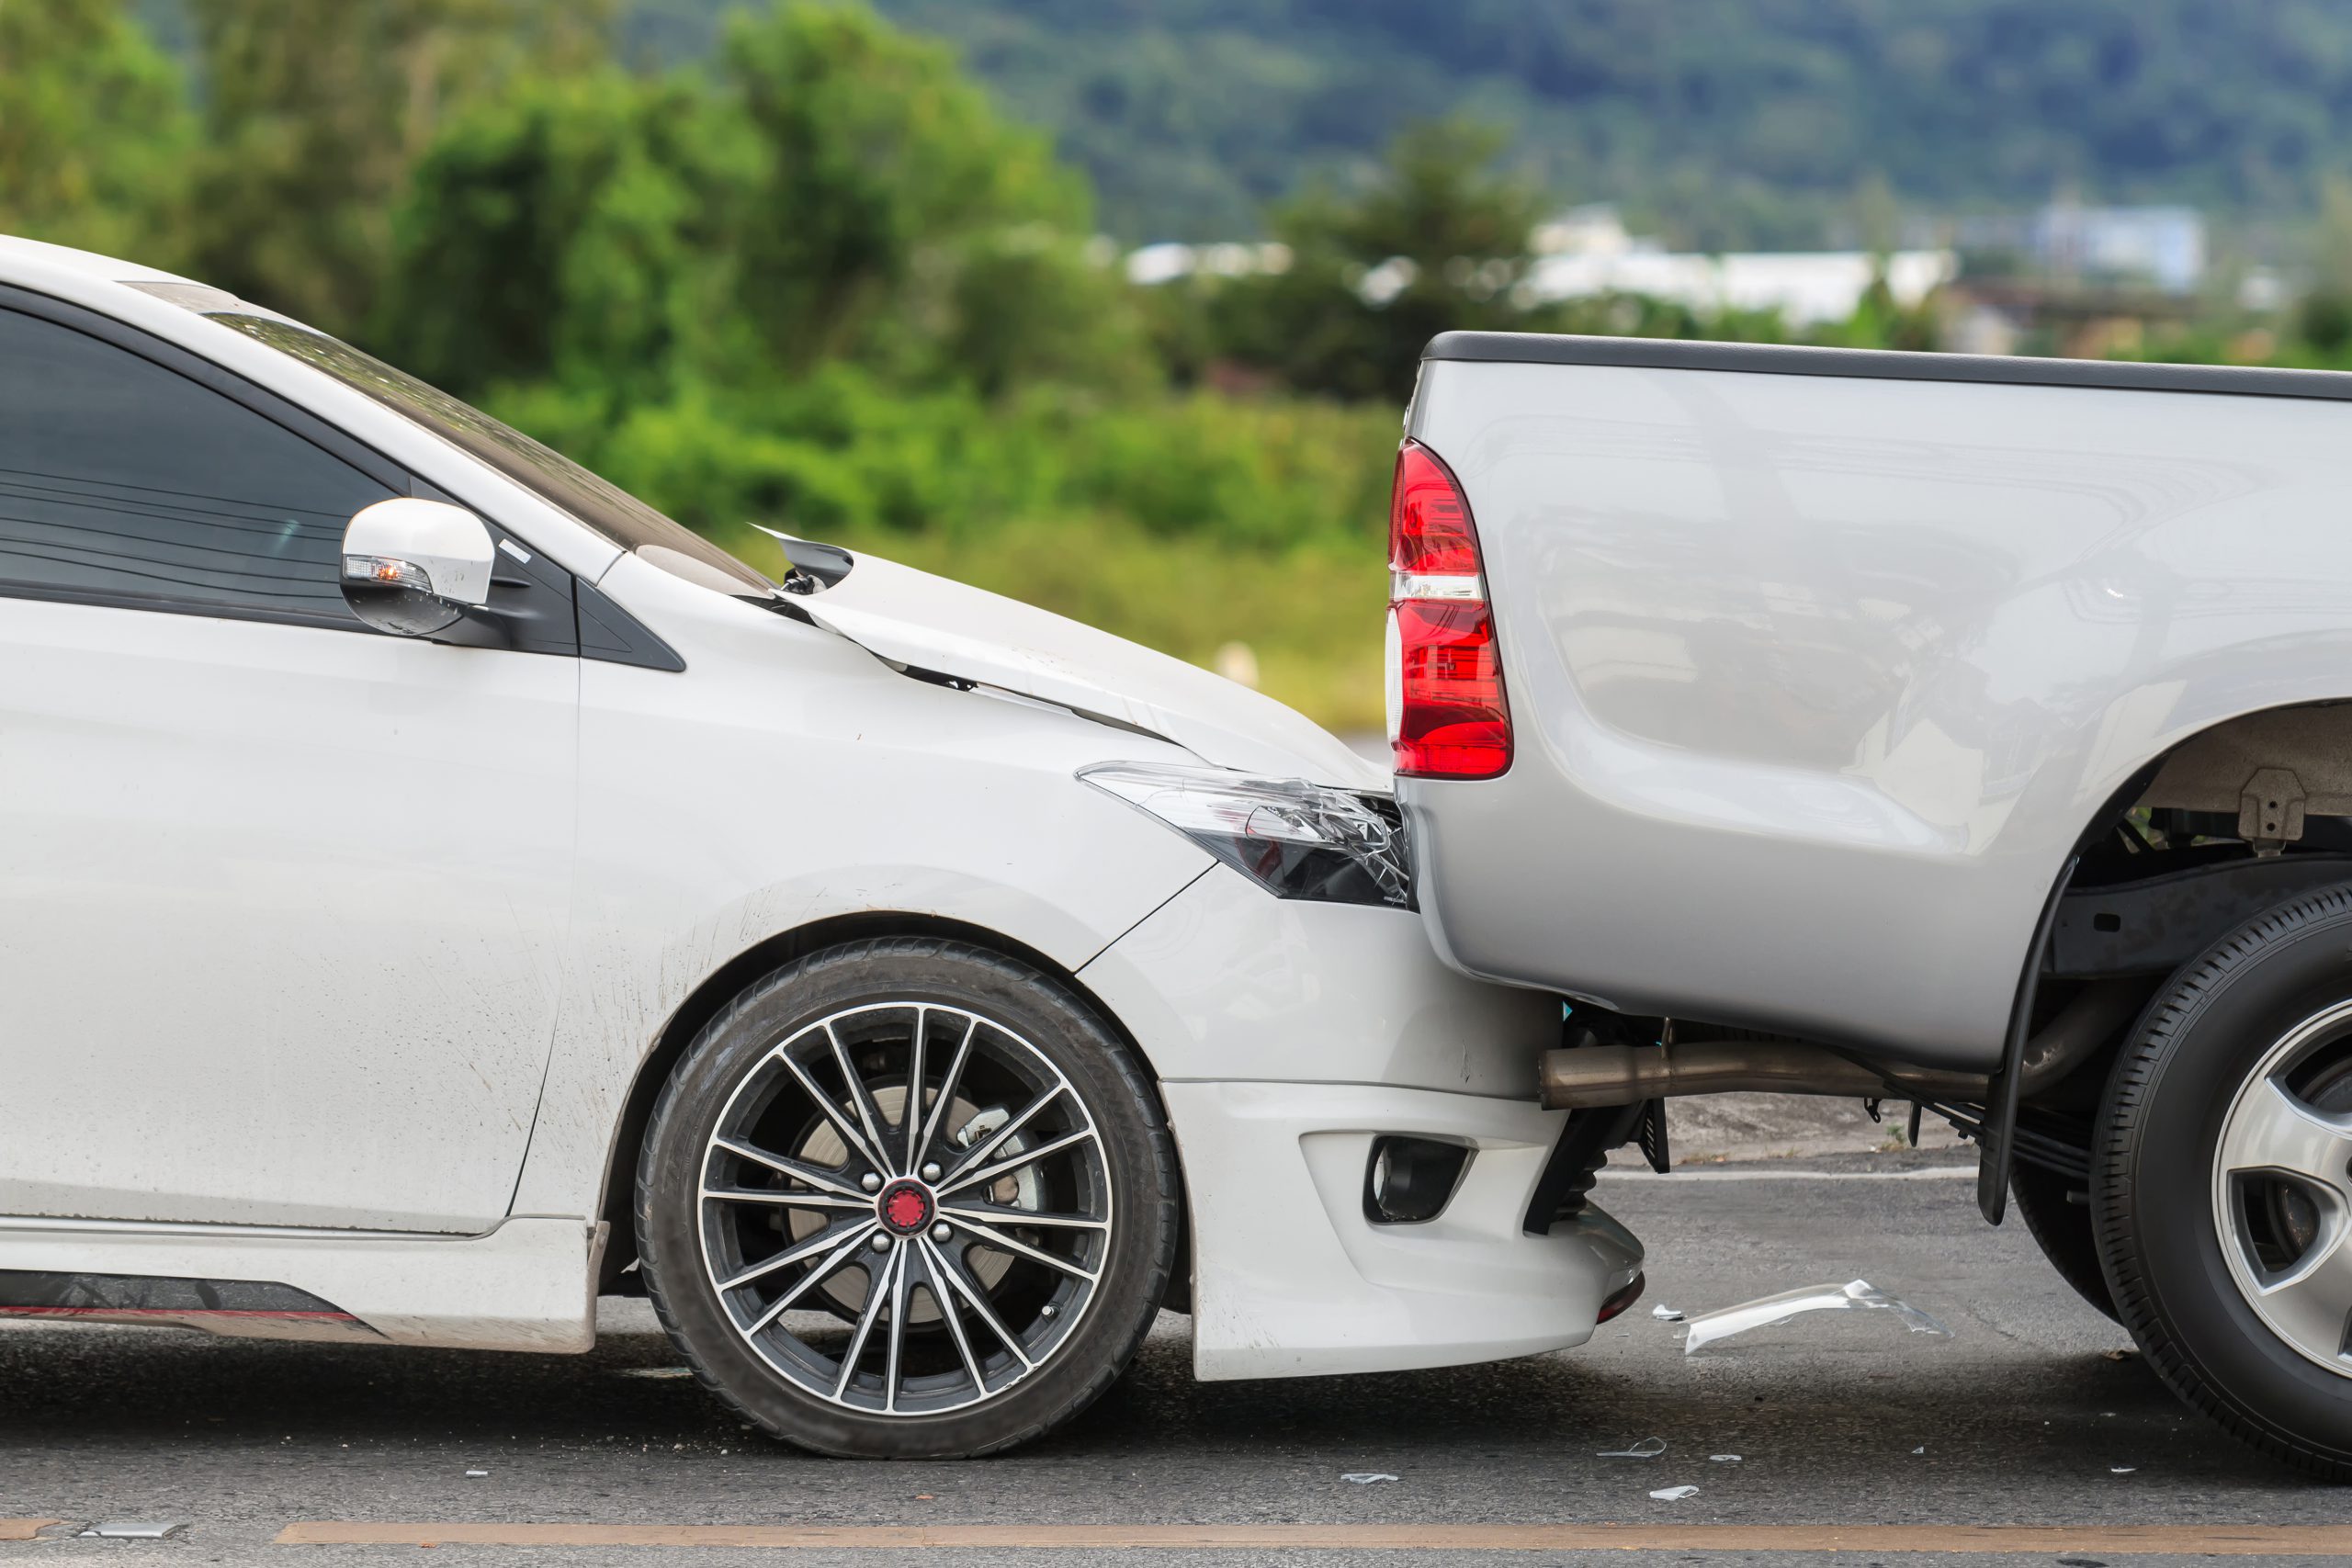 תאונות דרכים – על ההתמודדות והטיפול בהיבטים המקצועיים | עו"ד תעבורה ערן בן עמי